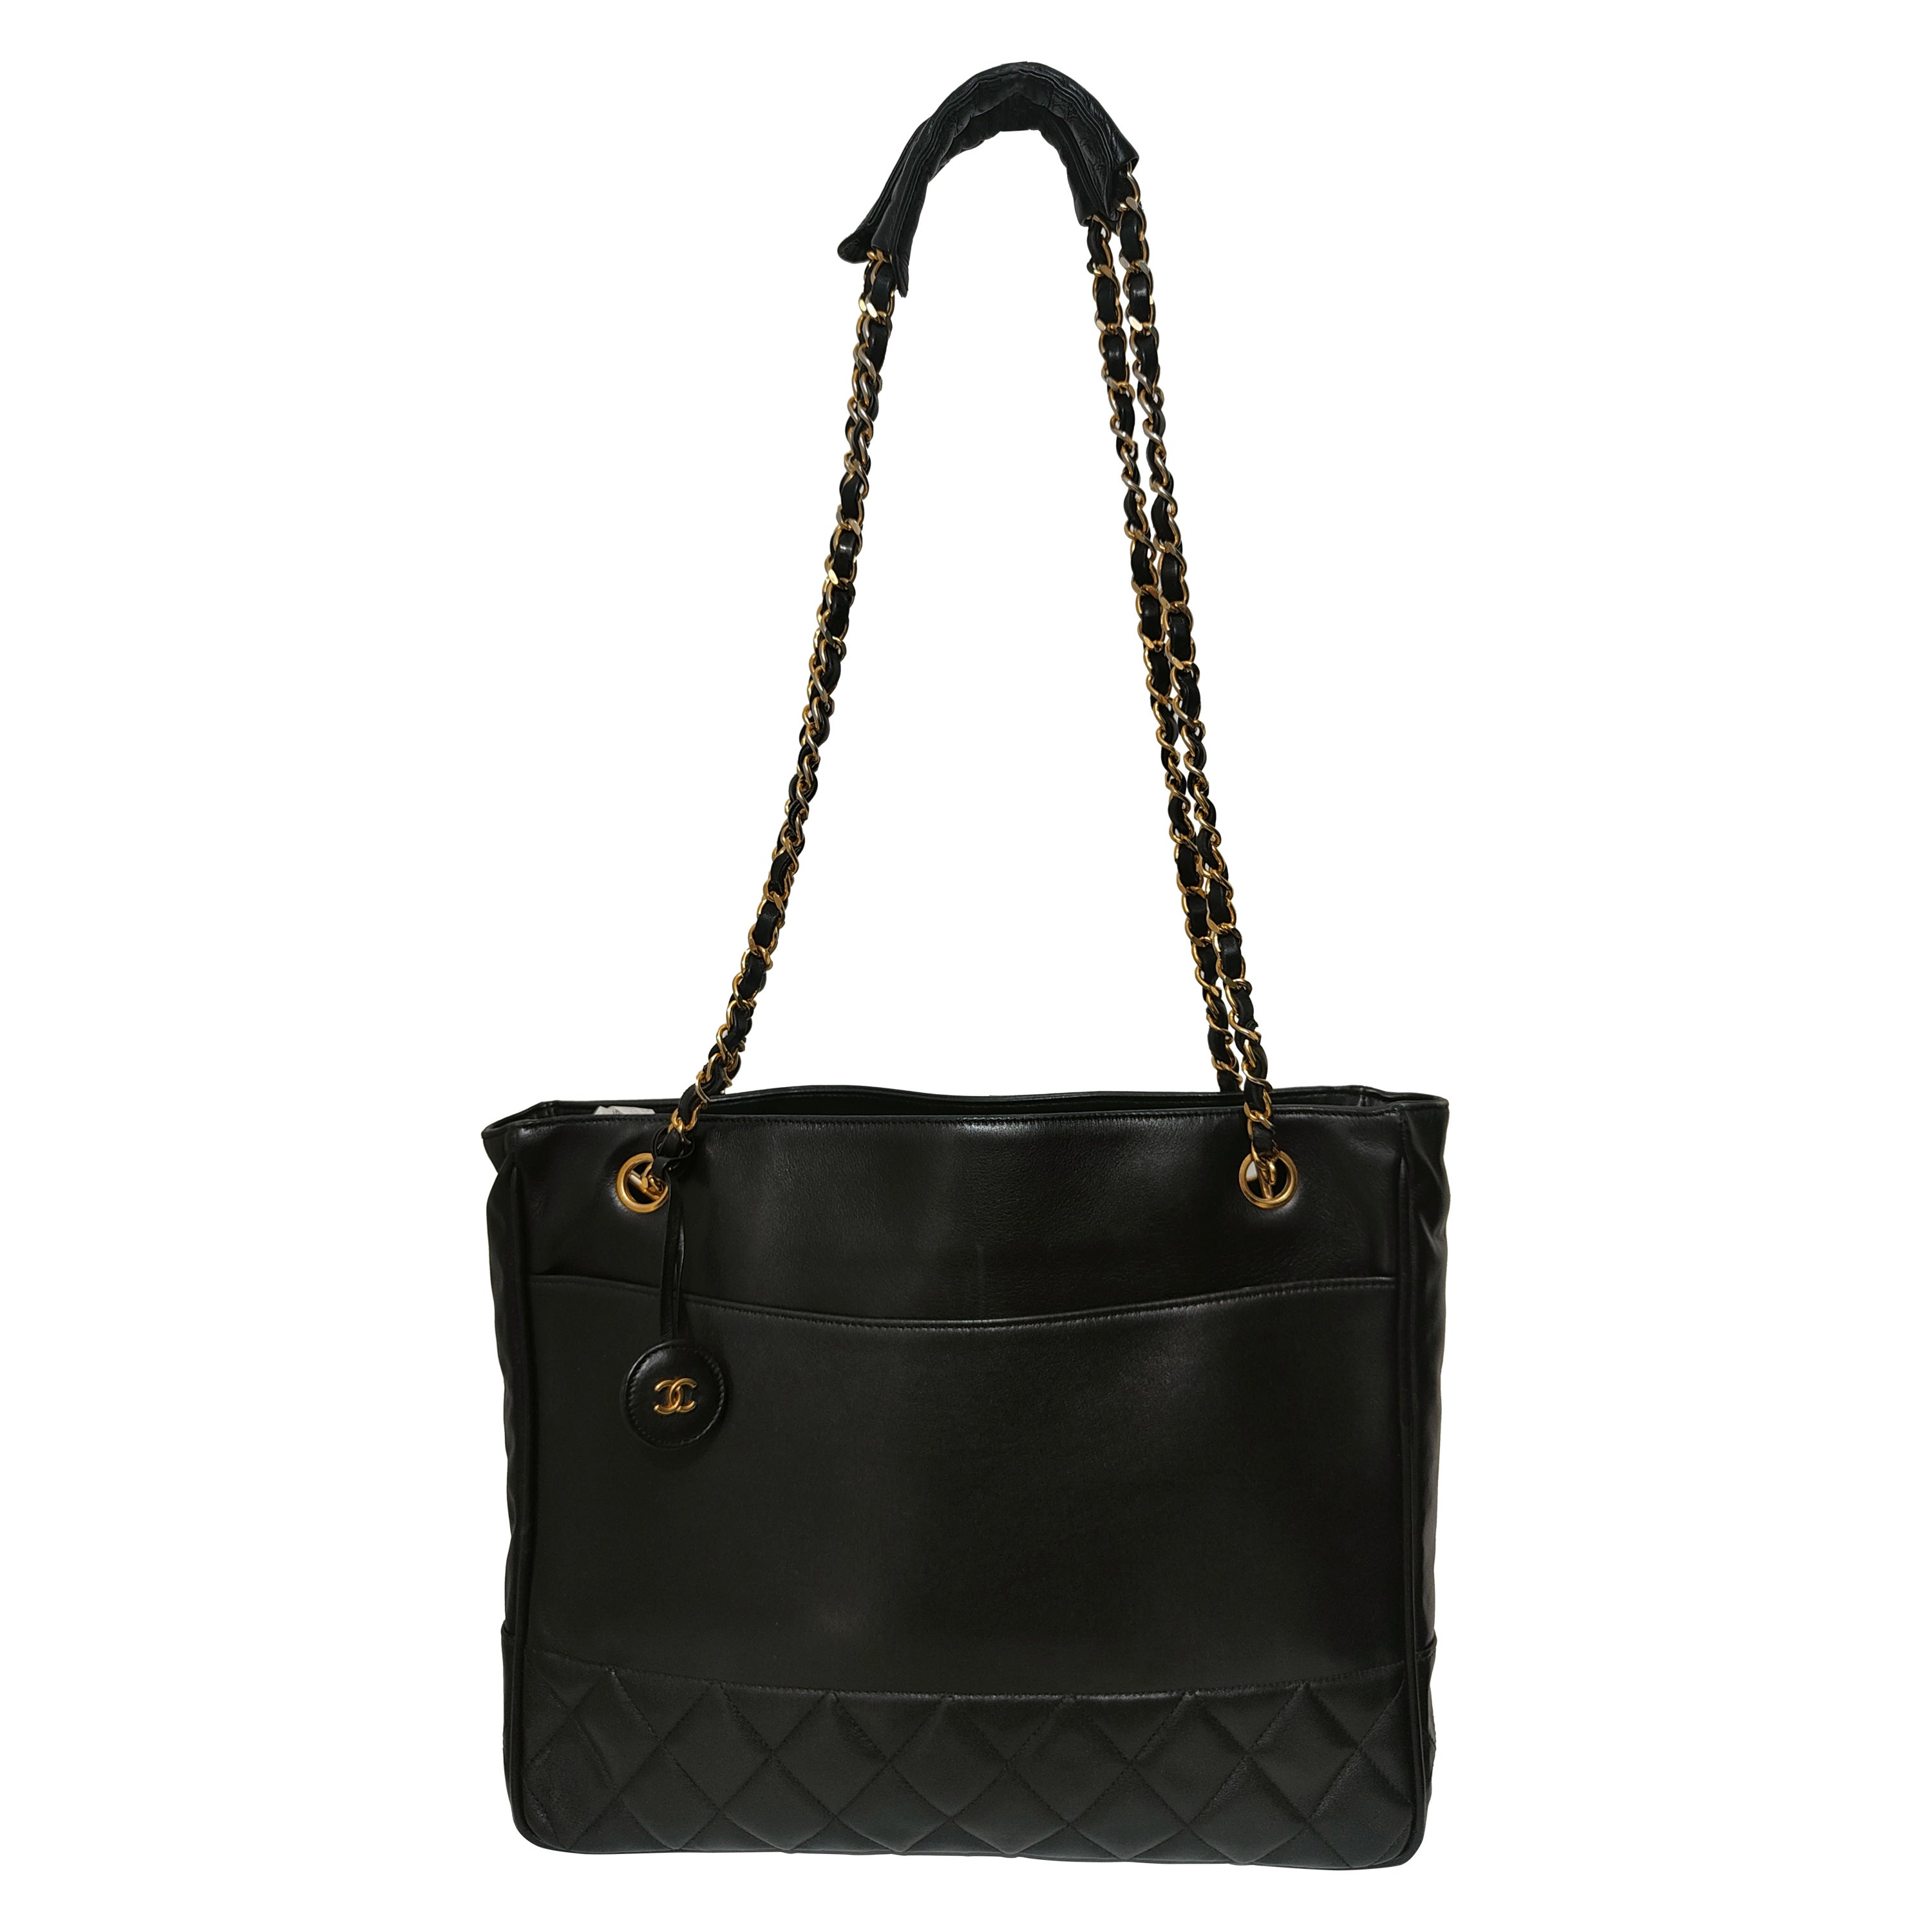 1990s Chanel black leather gold hardware shoulder bag  For Sale